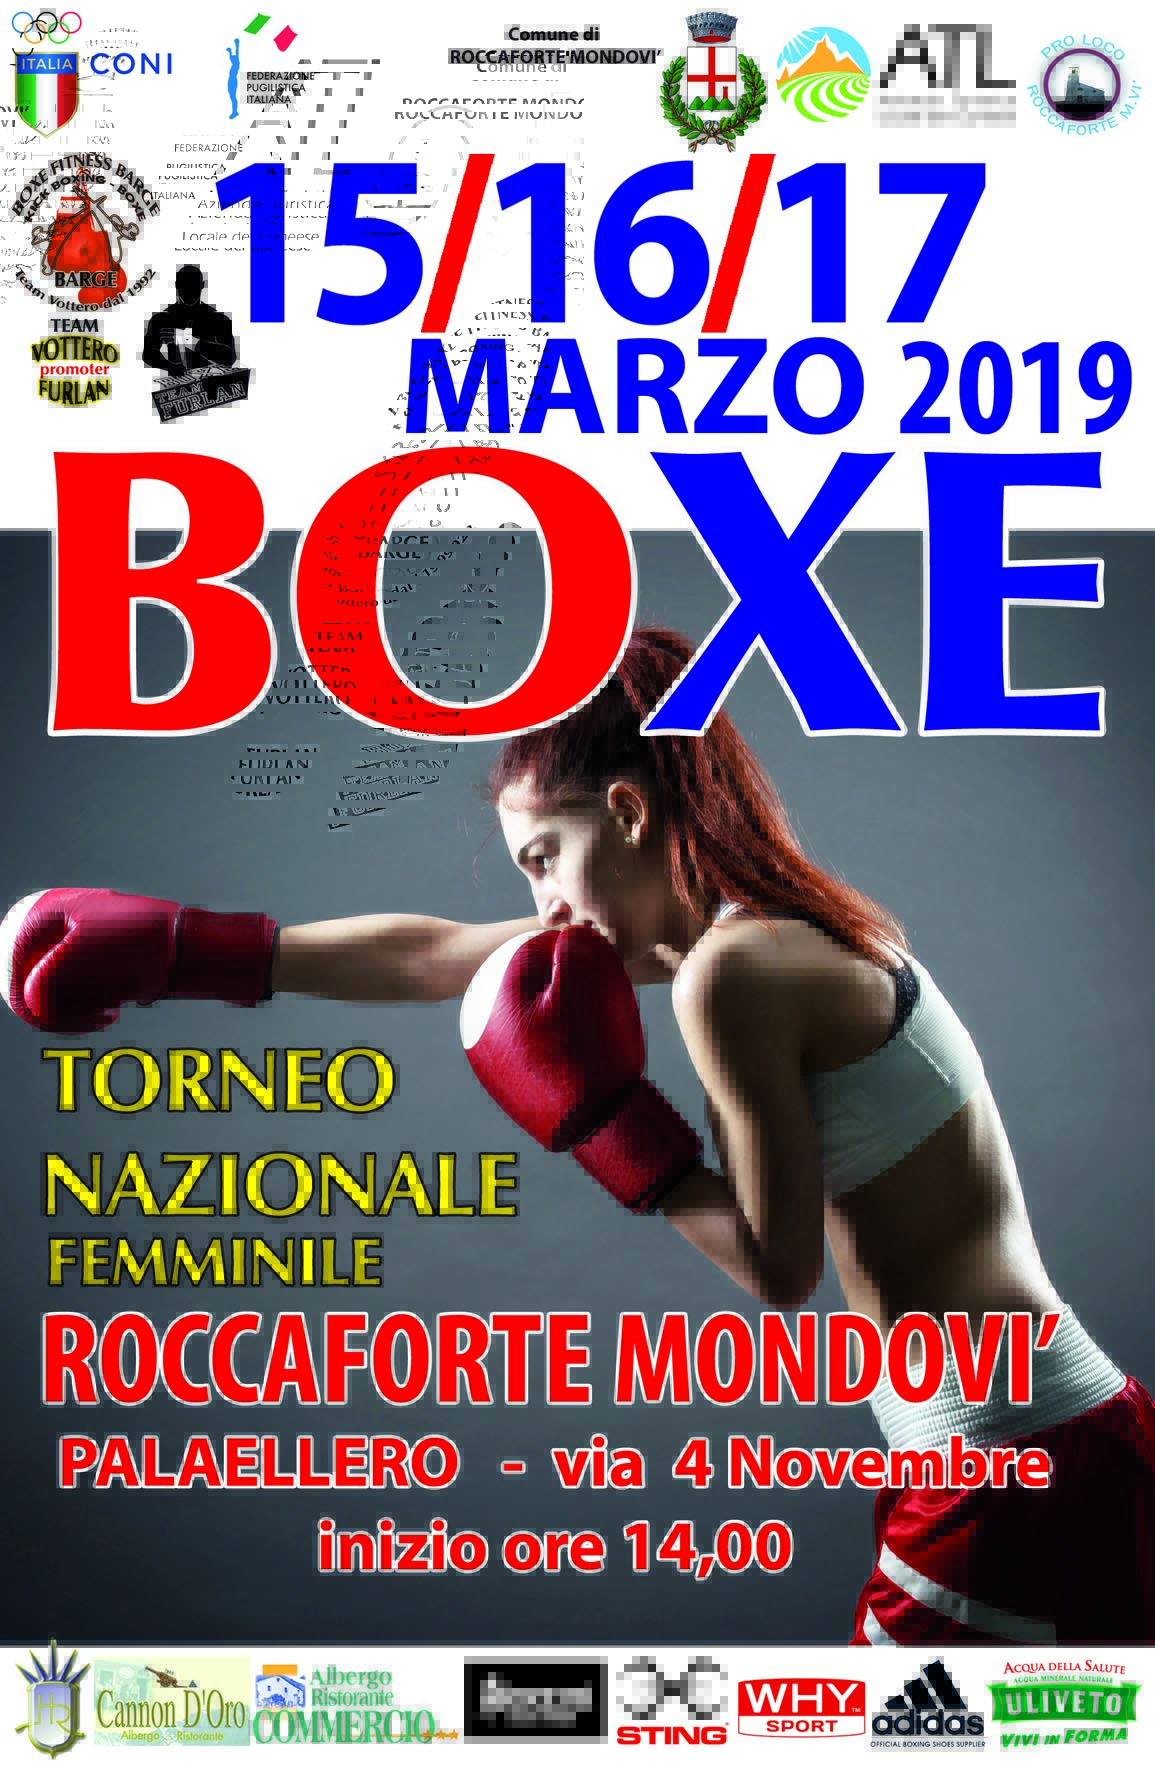 Torneo Naz. Femminile 2019 - Roccaforte Mondovì 15-17 Marzo: ELENCO PARTECIPANTI AGGIORNATO - INFOLIVESTREAMING